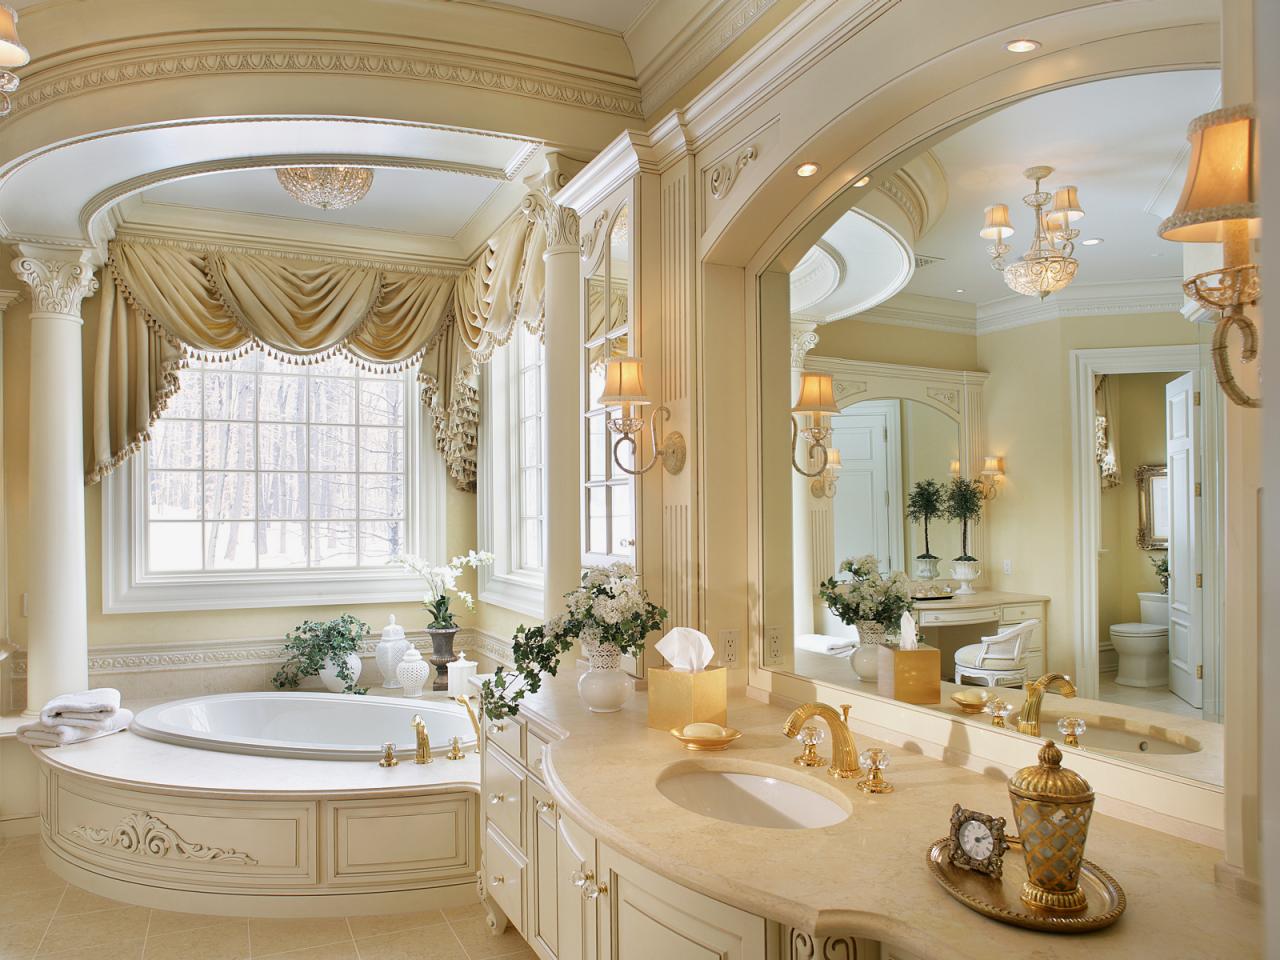 20 Bathtub Ideas for a Beautiful Bathroom Design